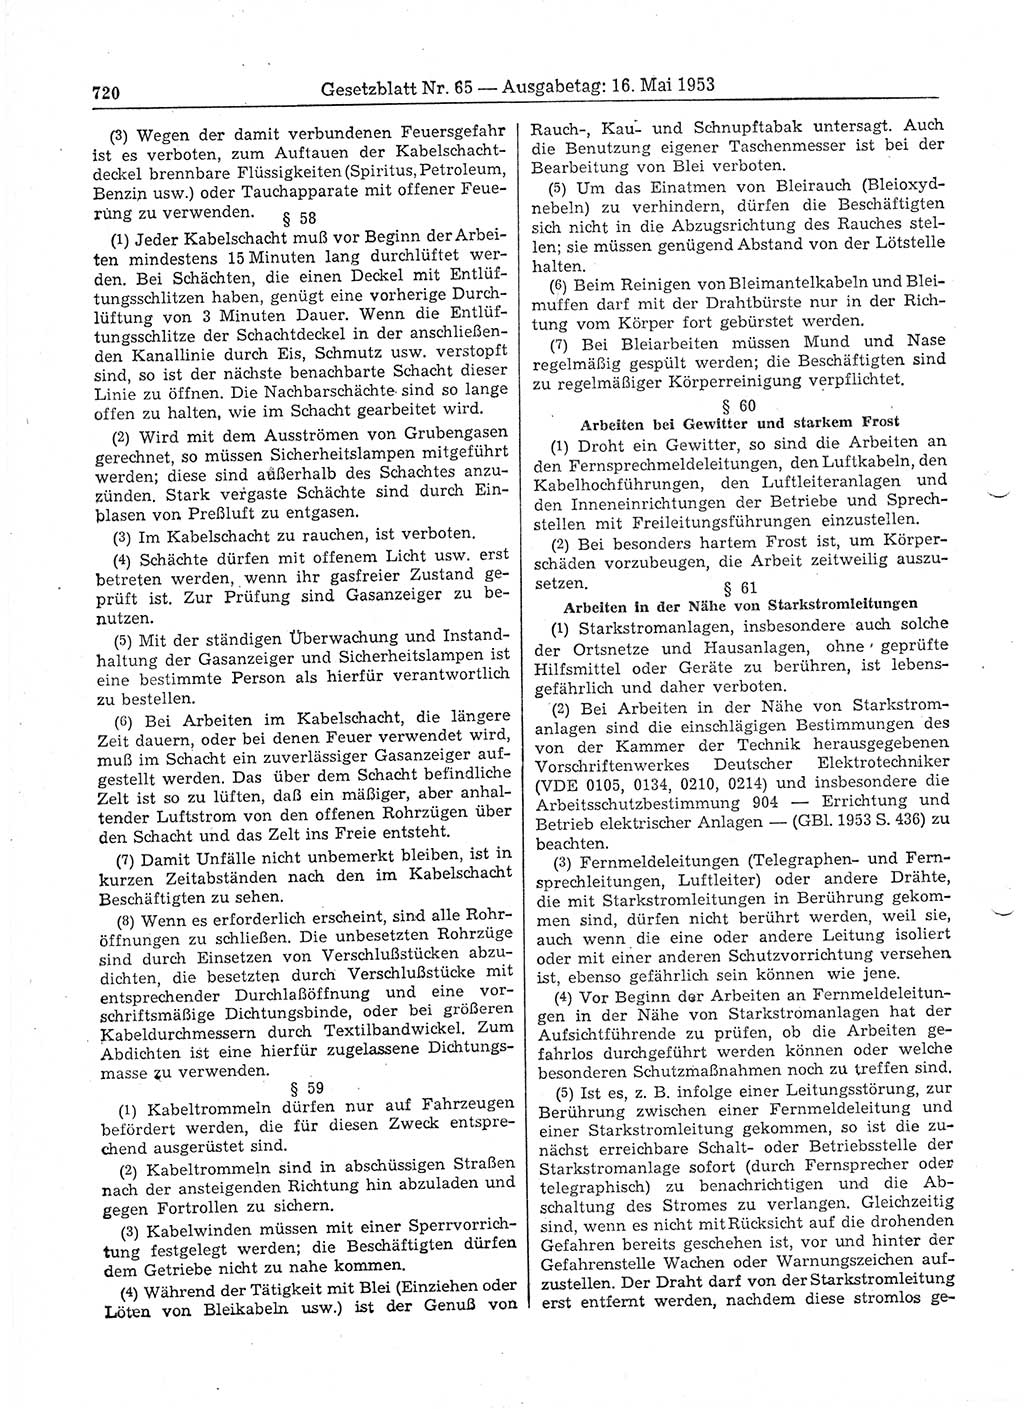 Gesetzblatt (GBl.) der Deutschen Demokratischen Republik (DDR) 1953, Seite 720 (GBl. DDR 1953, S. 720)